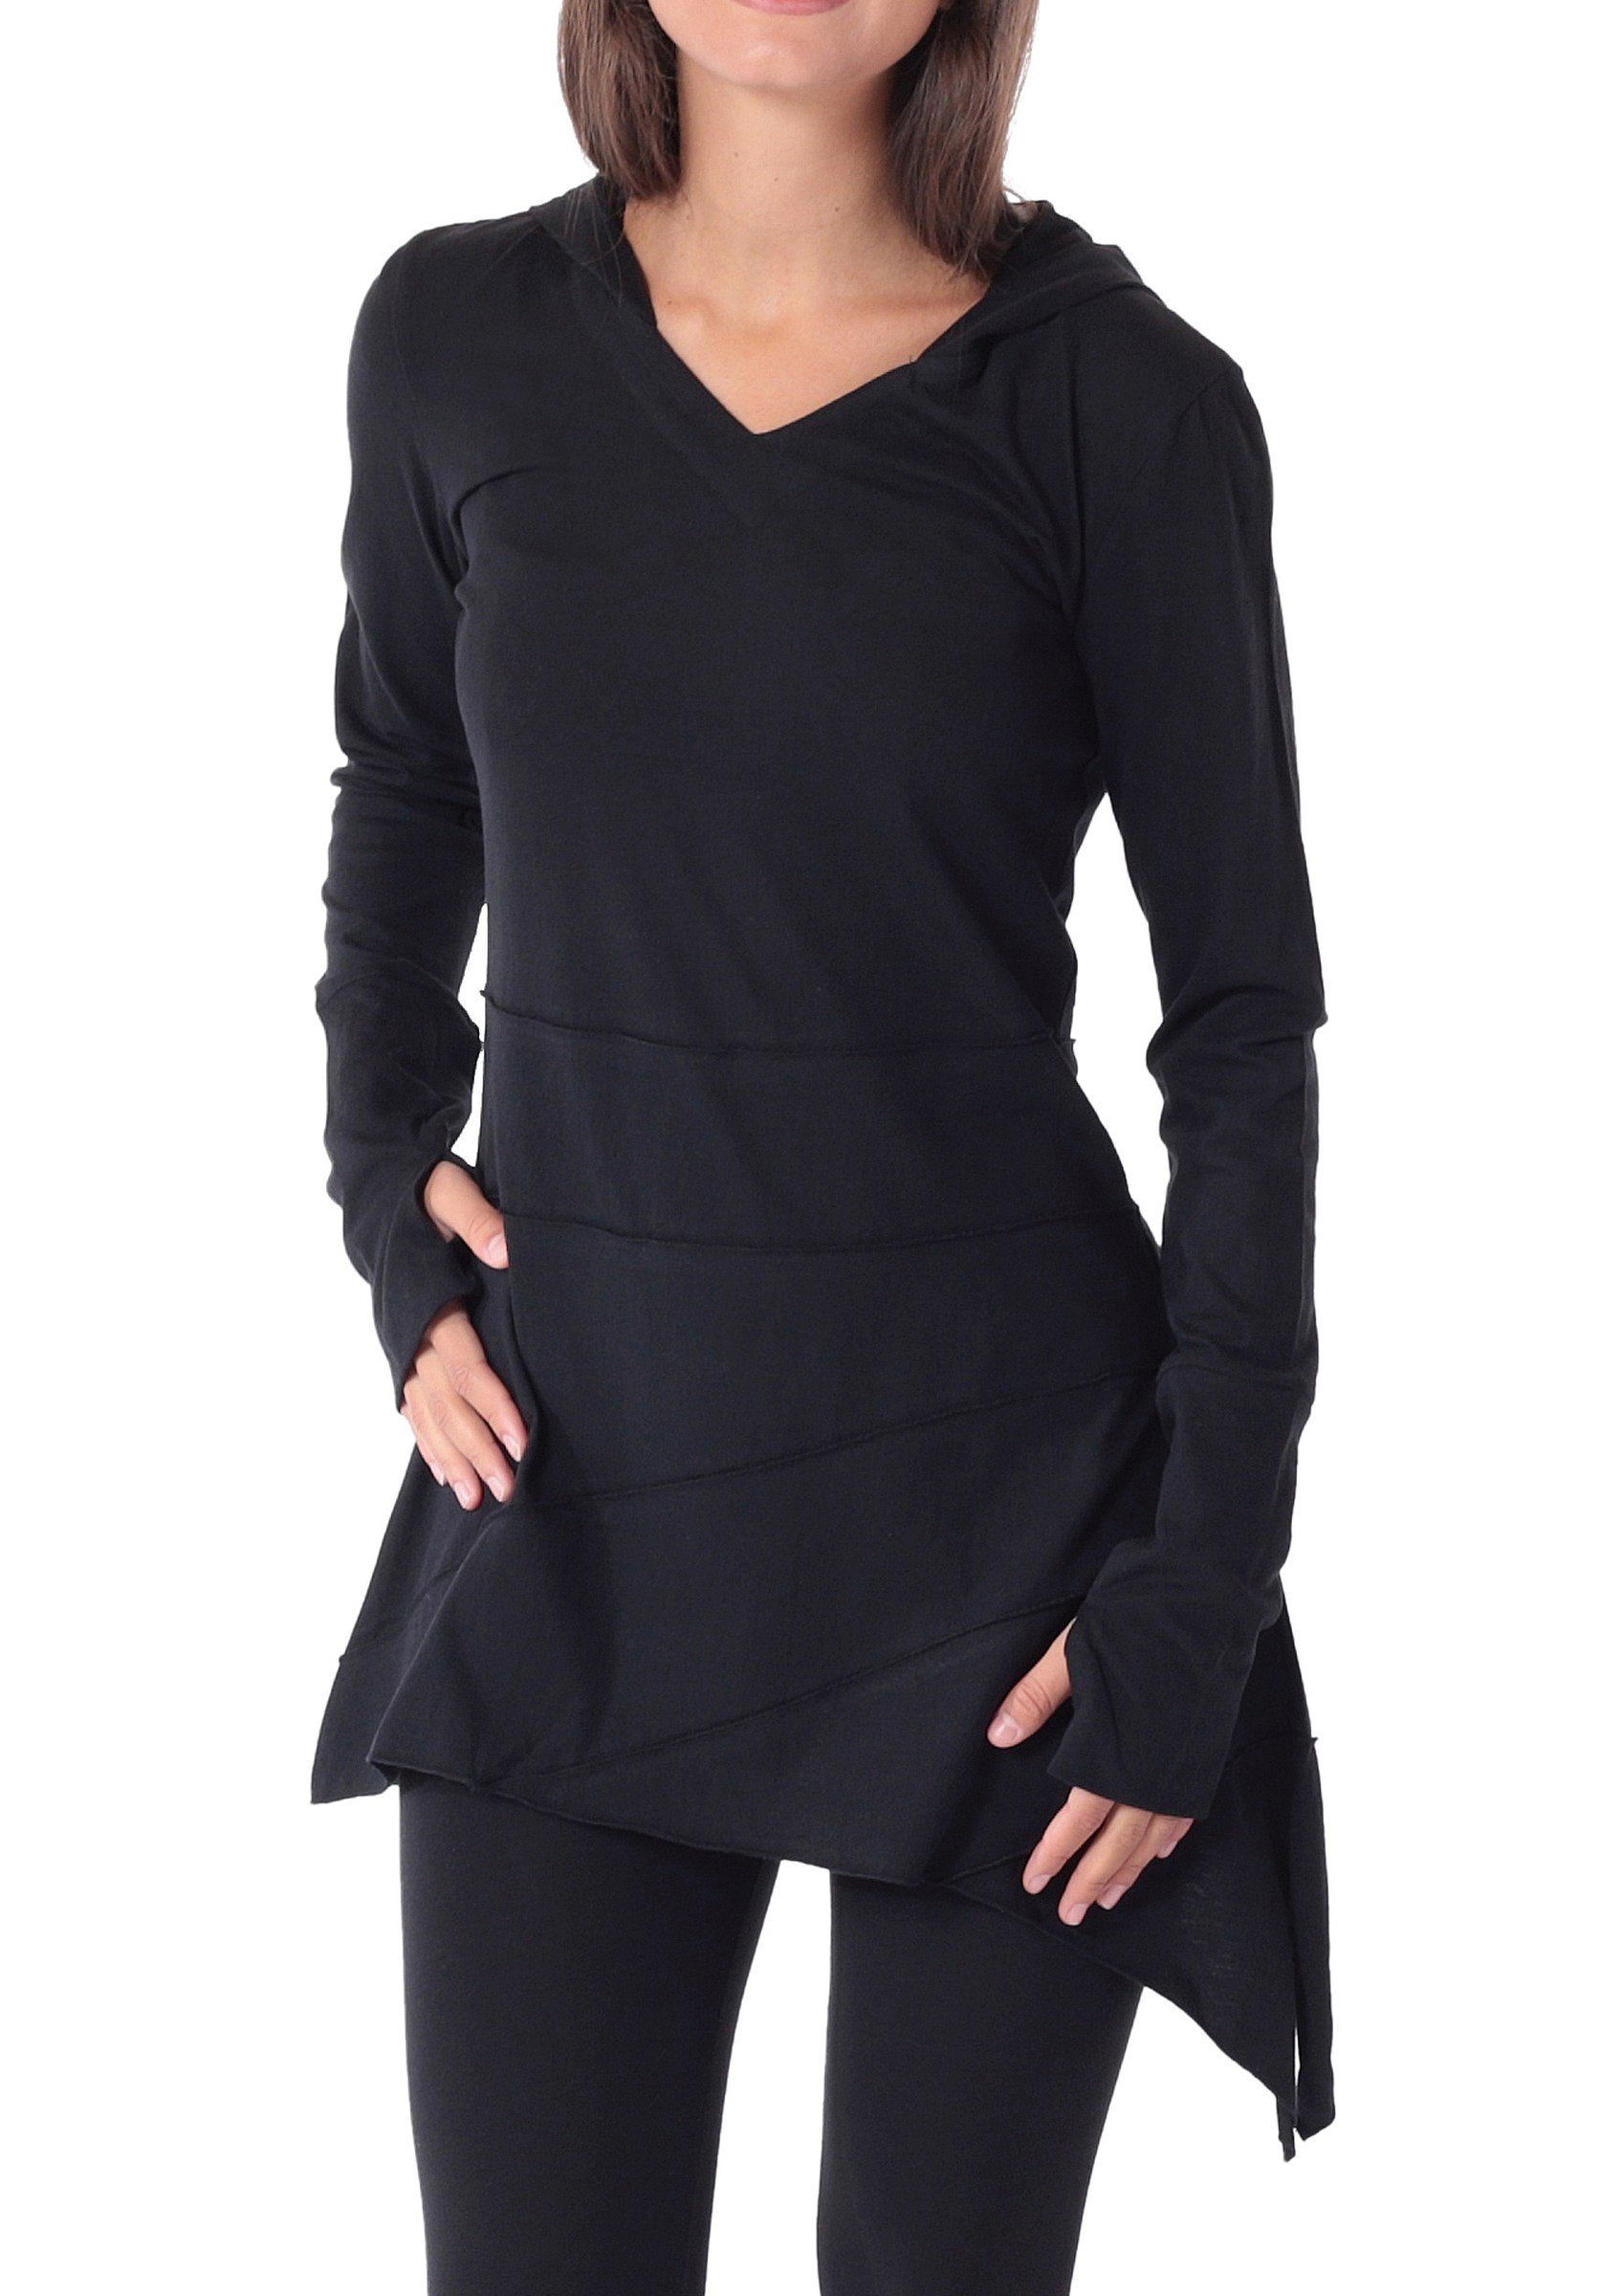 PUREWONDER Tunikakleid Sommerkleid aus leichtem Jersey Tunika mit Zipfelkapuze Schwarz